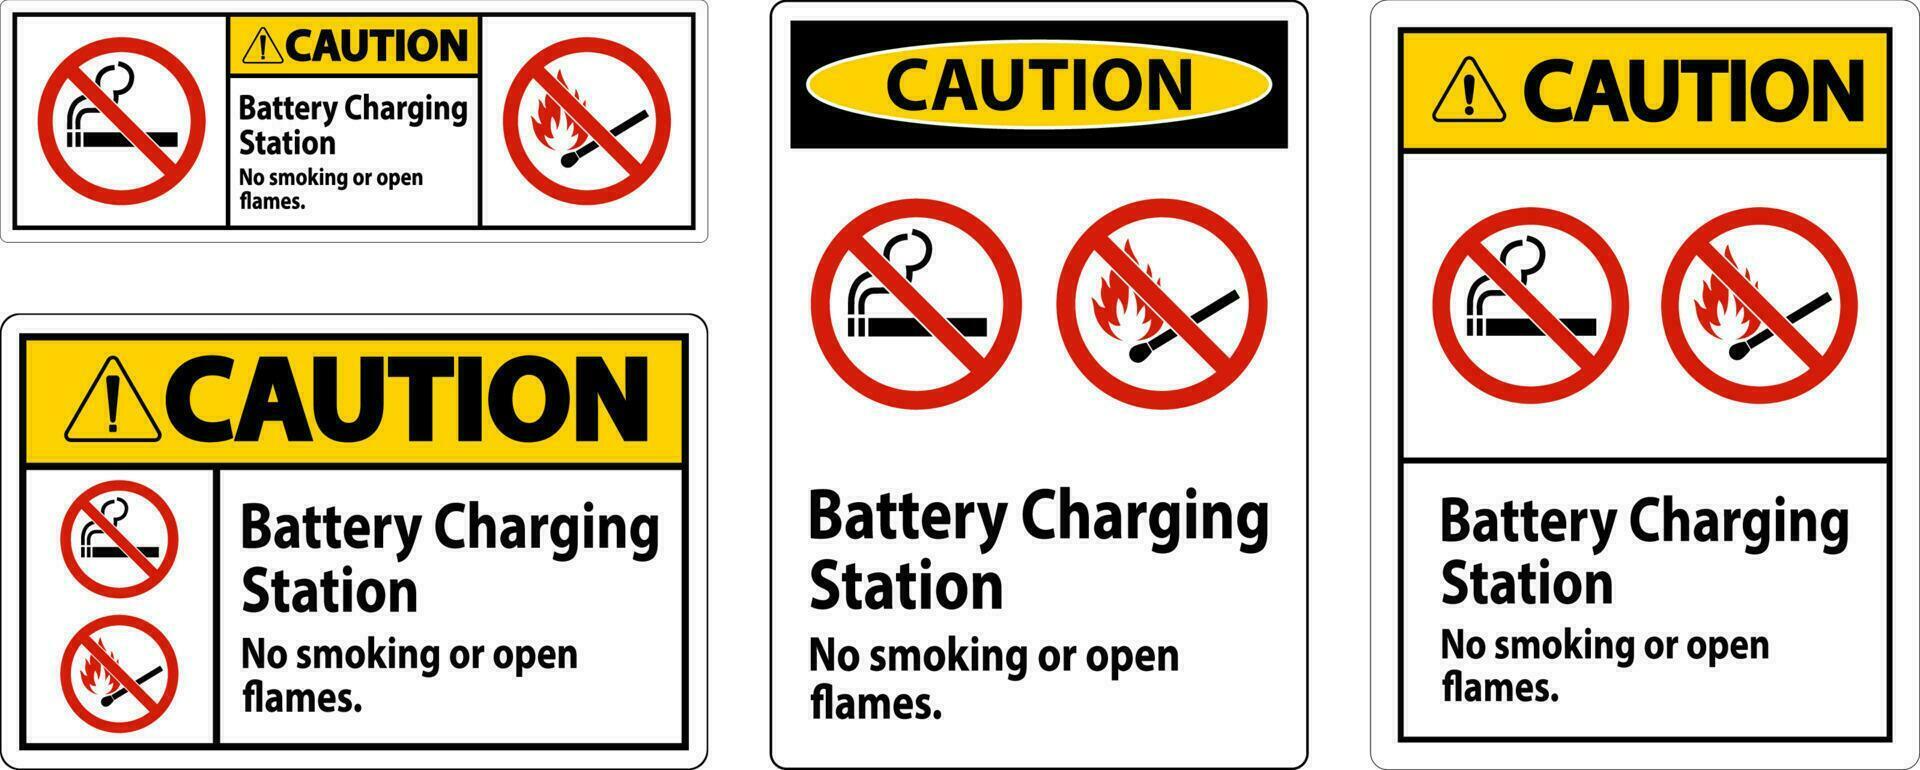 mise en garde signe batterie mise en charge gare, non fumeur ou ouvert flammes vecteur